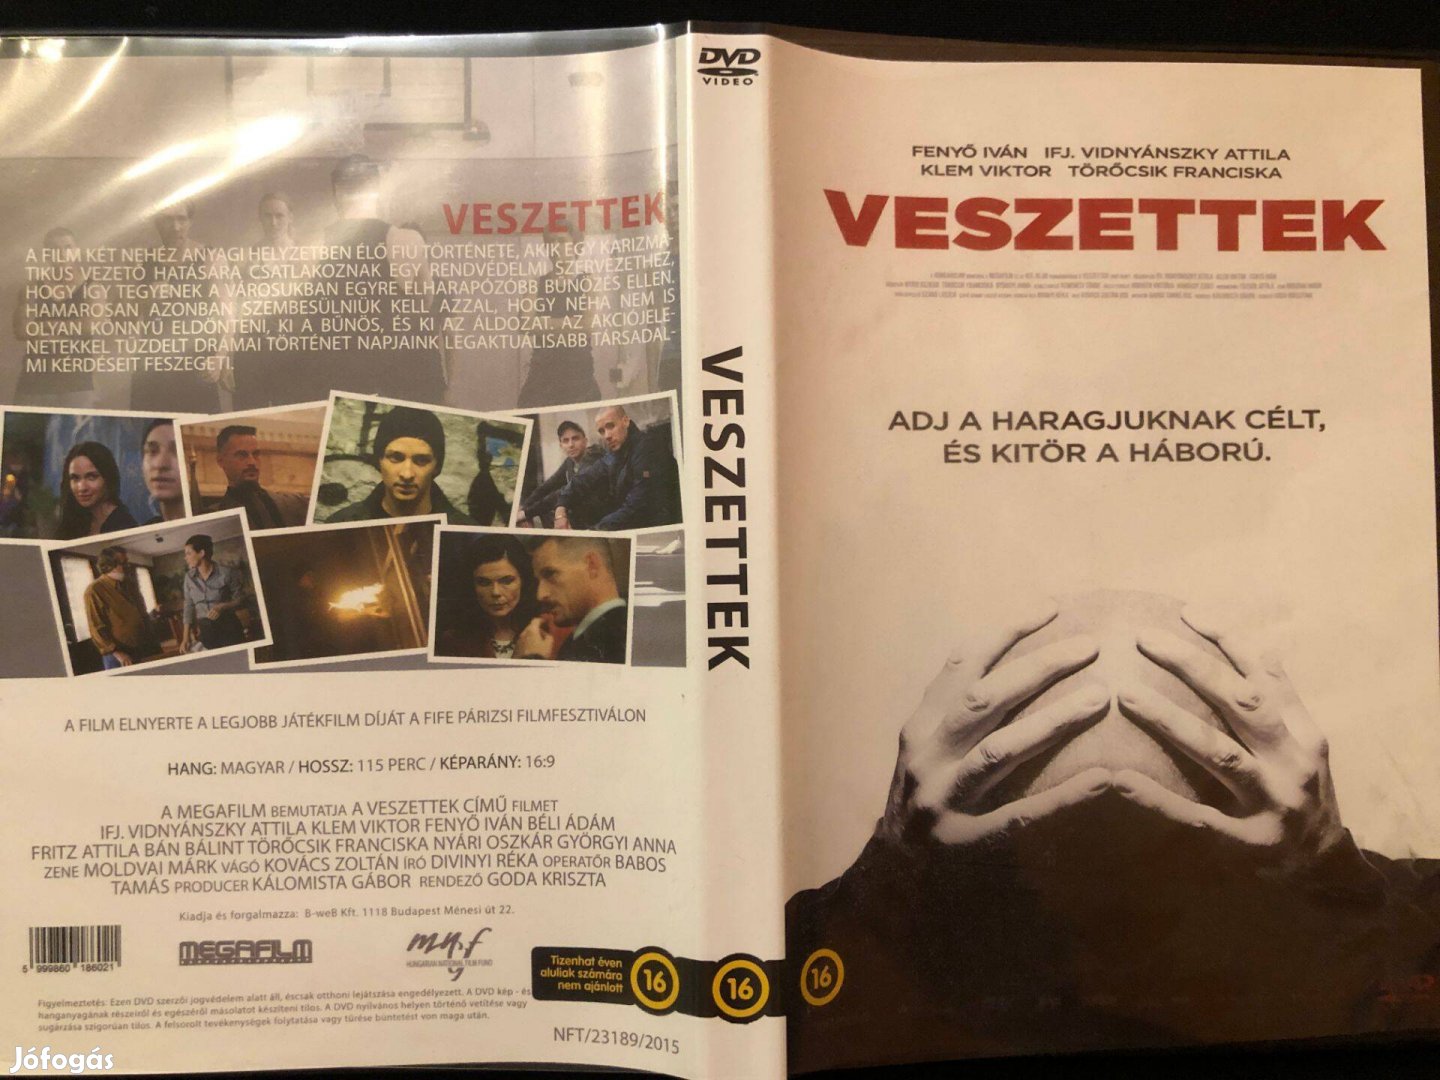 Veszettek (karcmentes, Fenyő Iván, Ifj. Vidnyánszky Attila) DVD